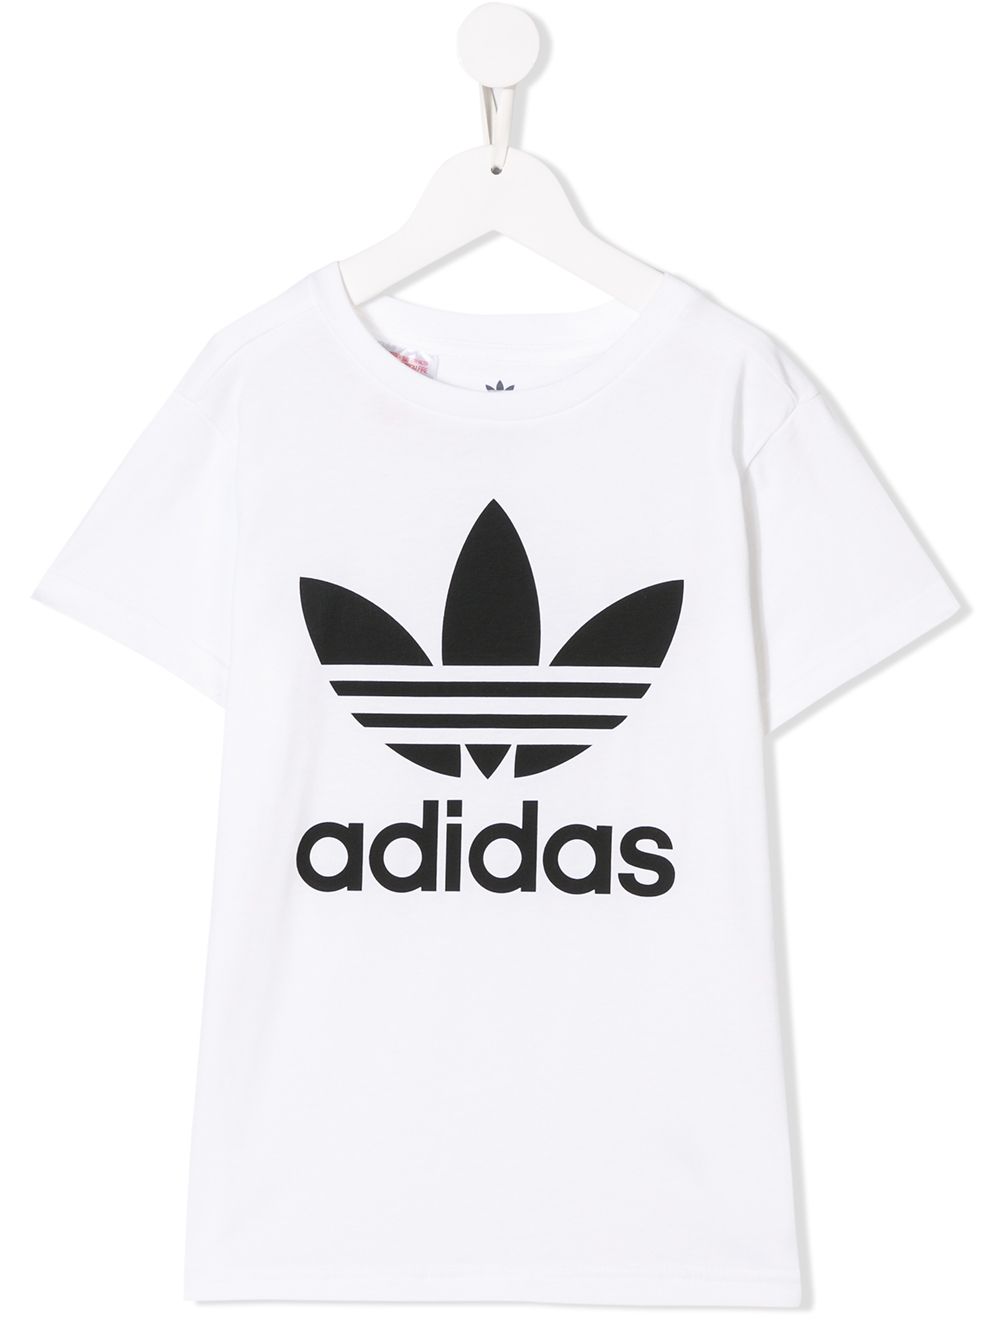 adidas Kids Trefoil logo T-shirt - White von adidas Kids